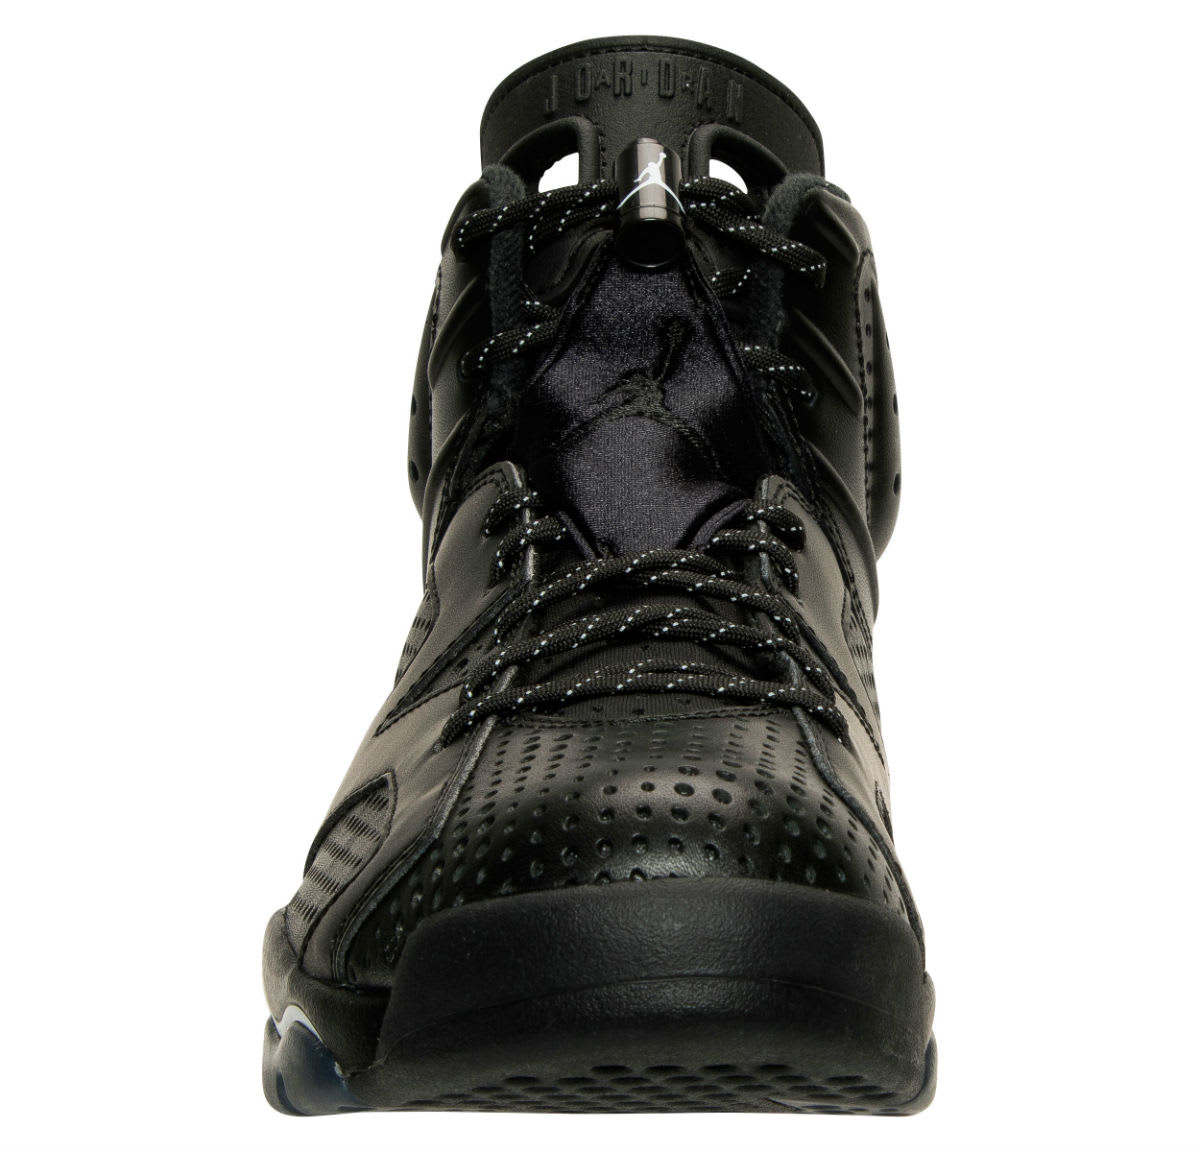 Air Jordan 6 Black Cat Release Date Front 384664-020